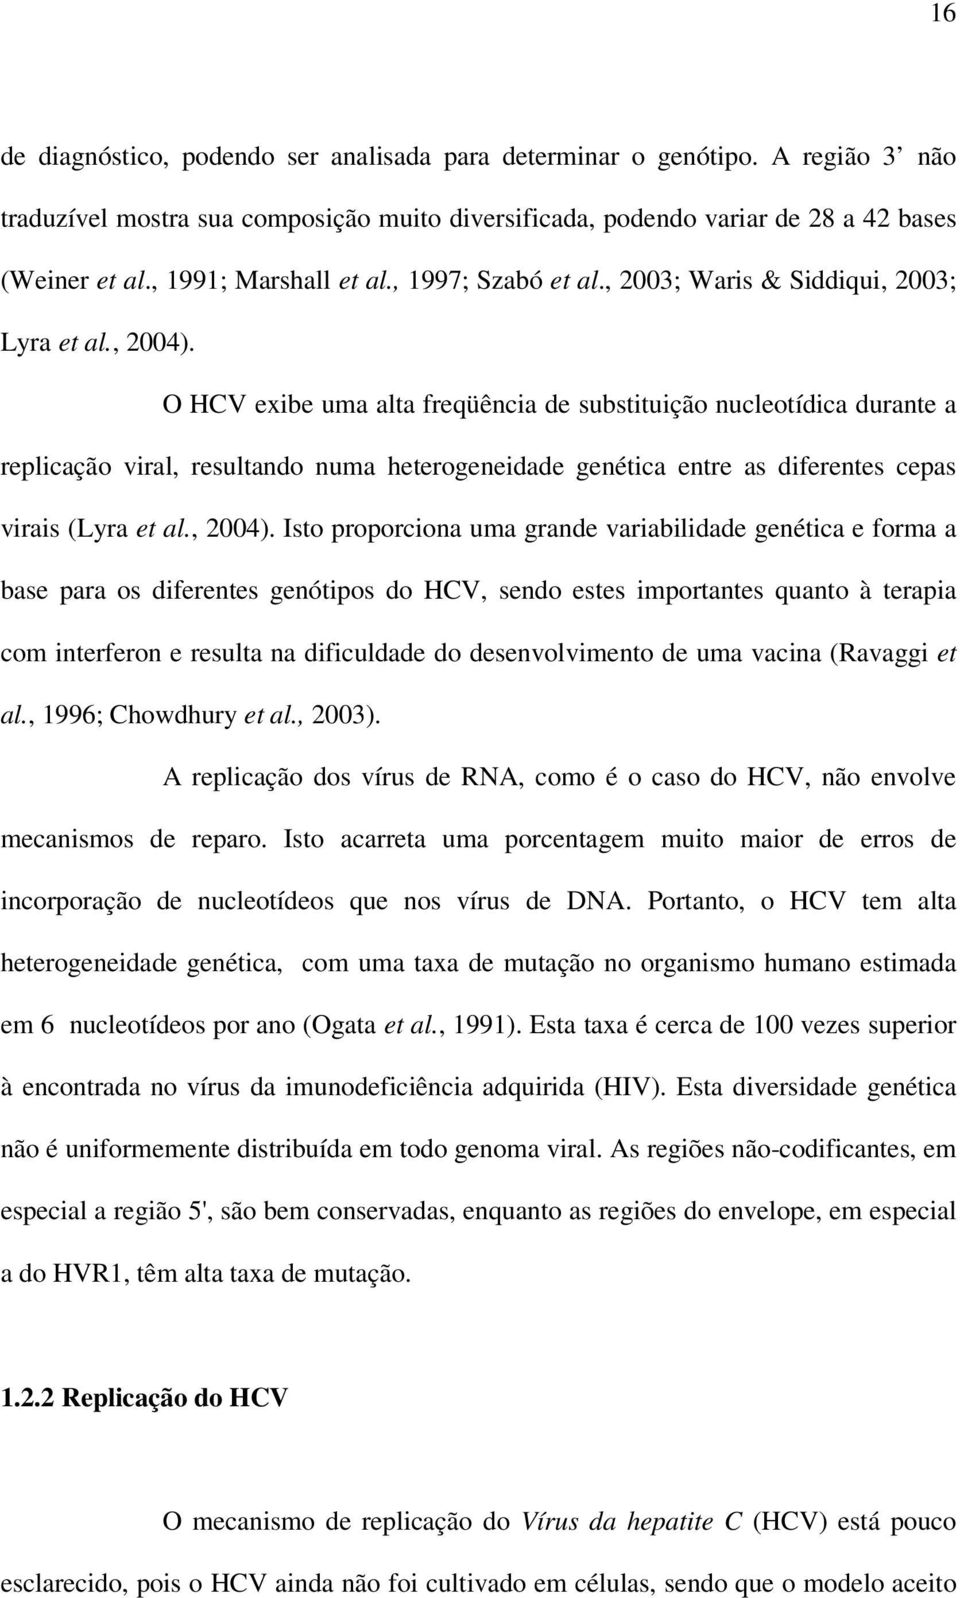 O HCV exibe uma alta freqüência de substituição nucleotídica durante a replicação viral, resultando numa heterogeneidade genética entre as diferentes cepas virais (Lyra et al., 2004).